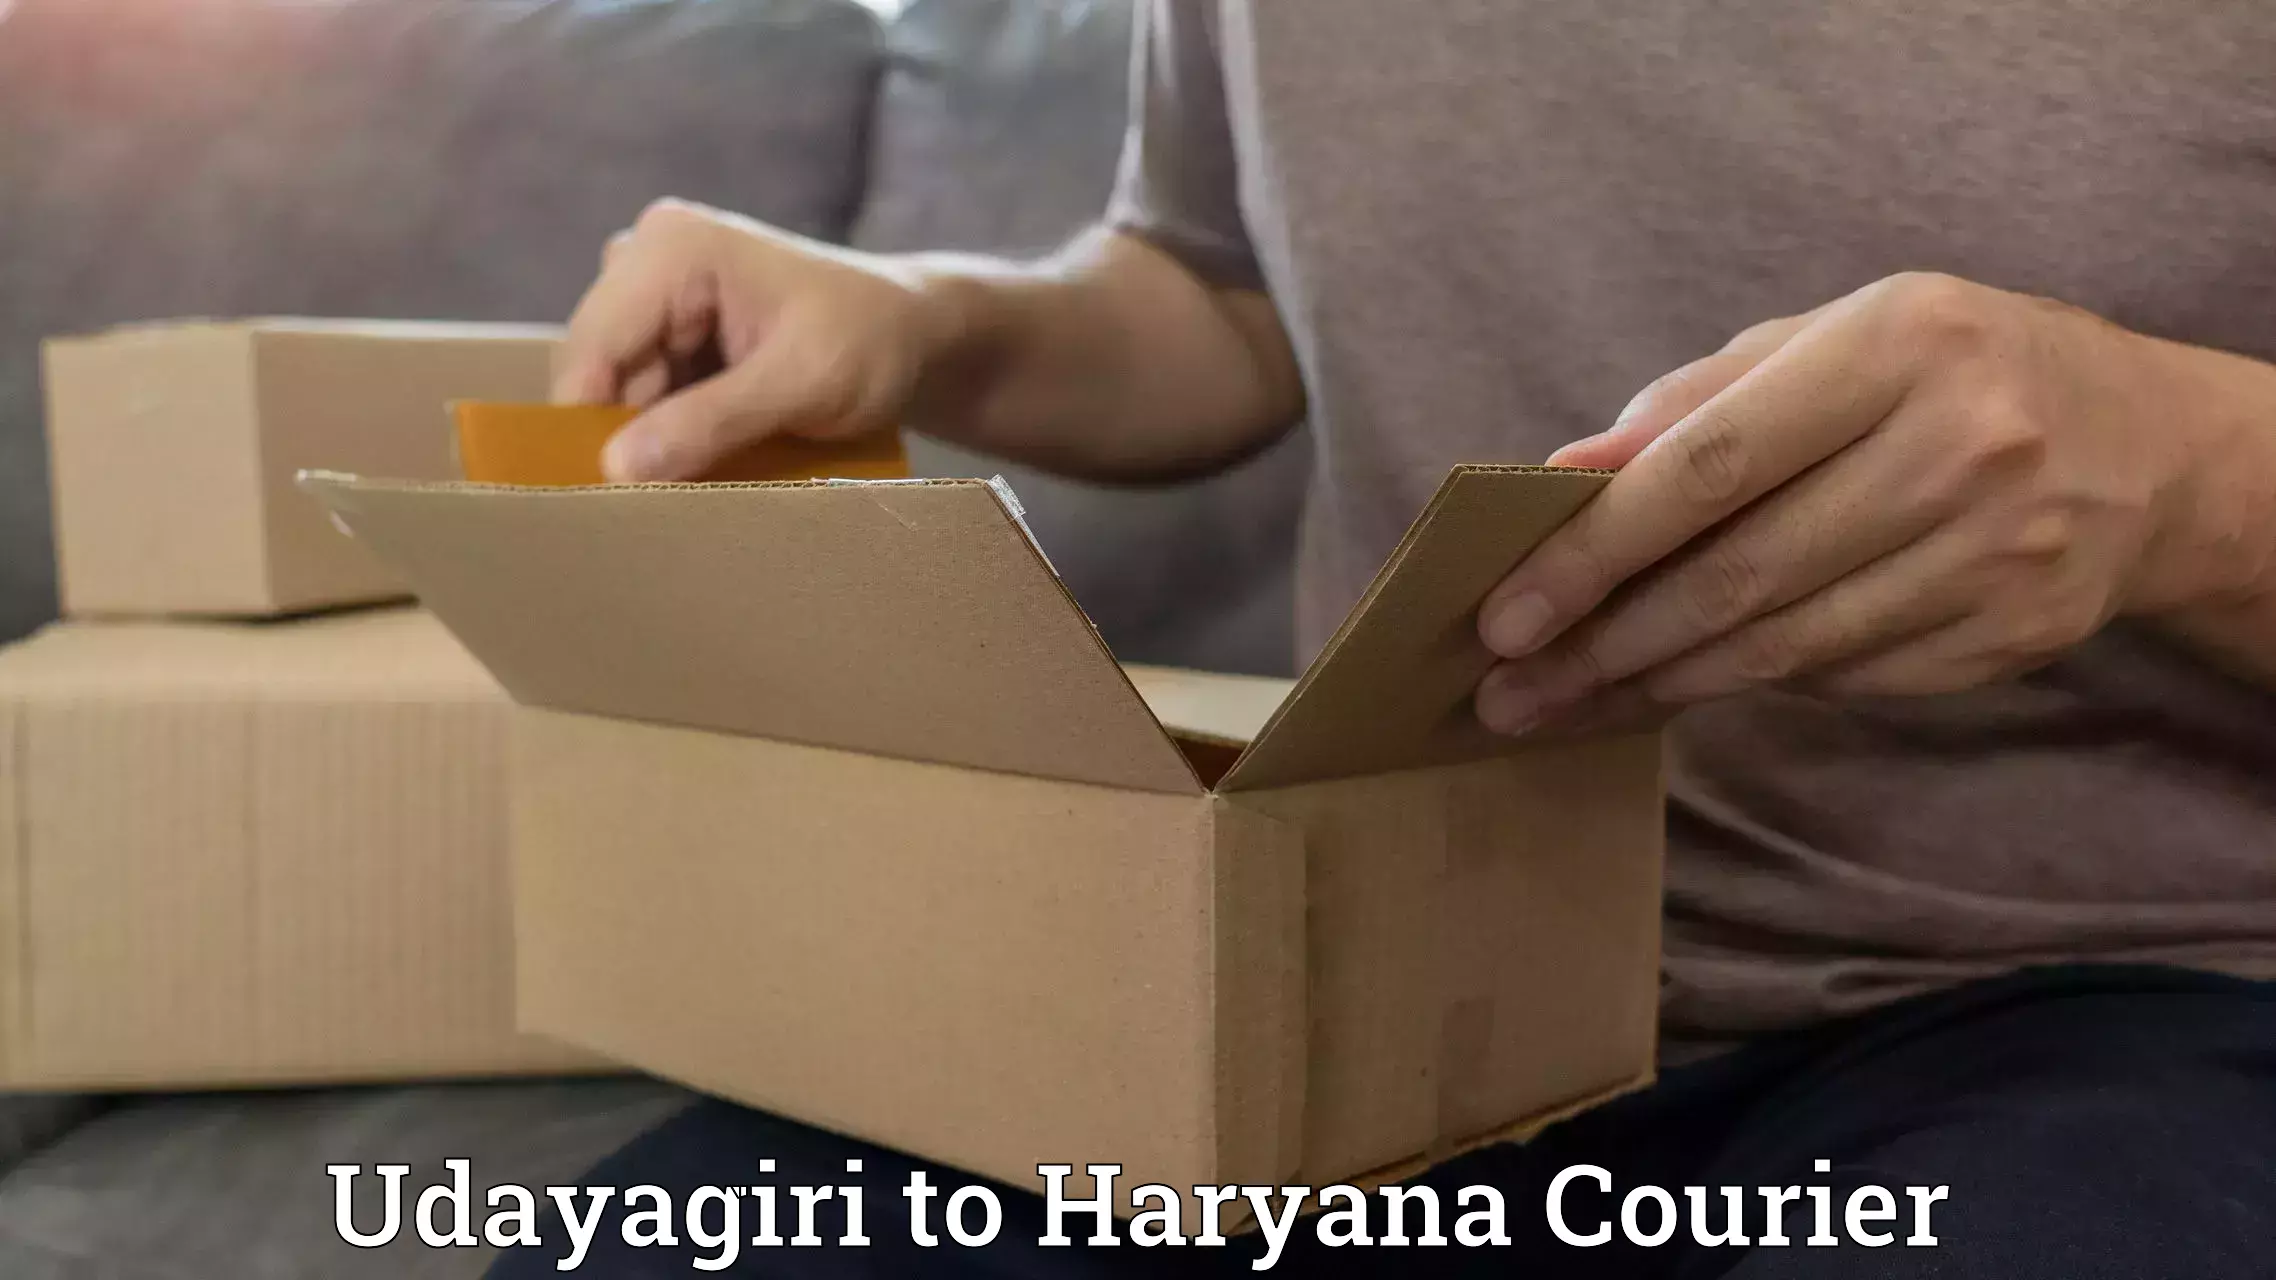 Expedited shipping methods Udayagiri to Chaudhary Charan Singh Haryana Agricultural University Hisar